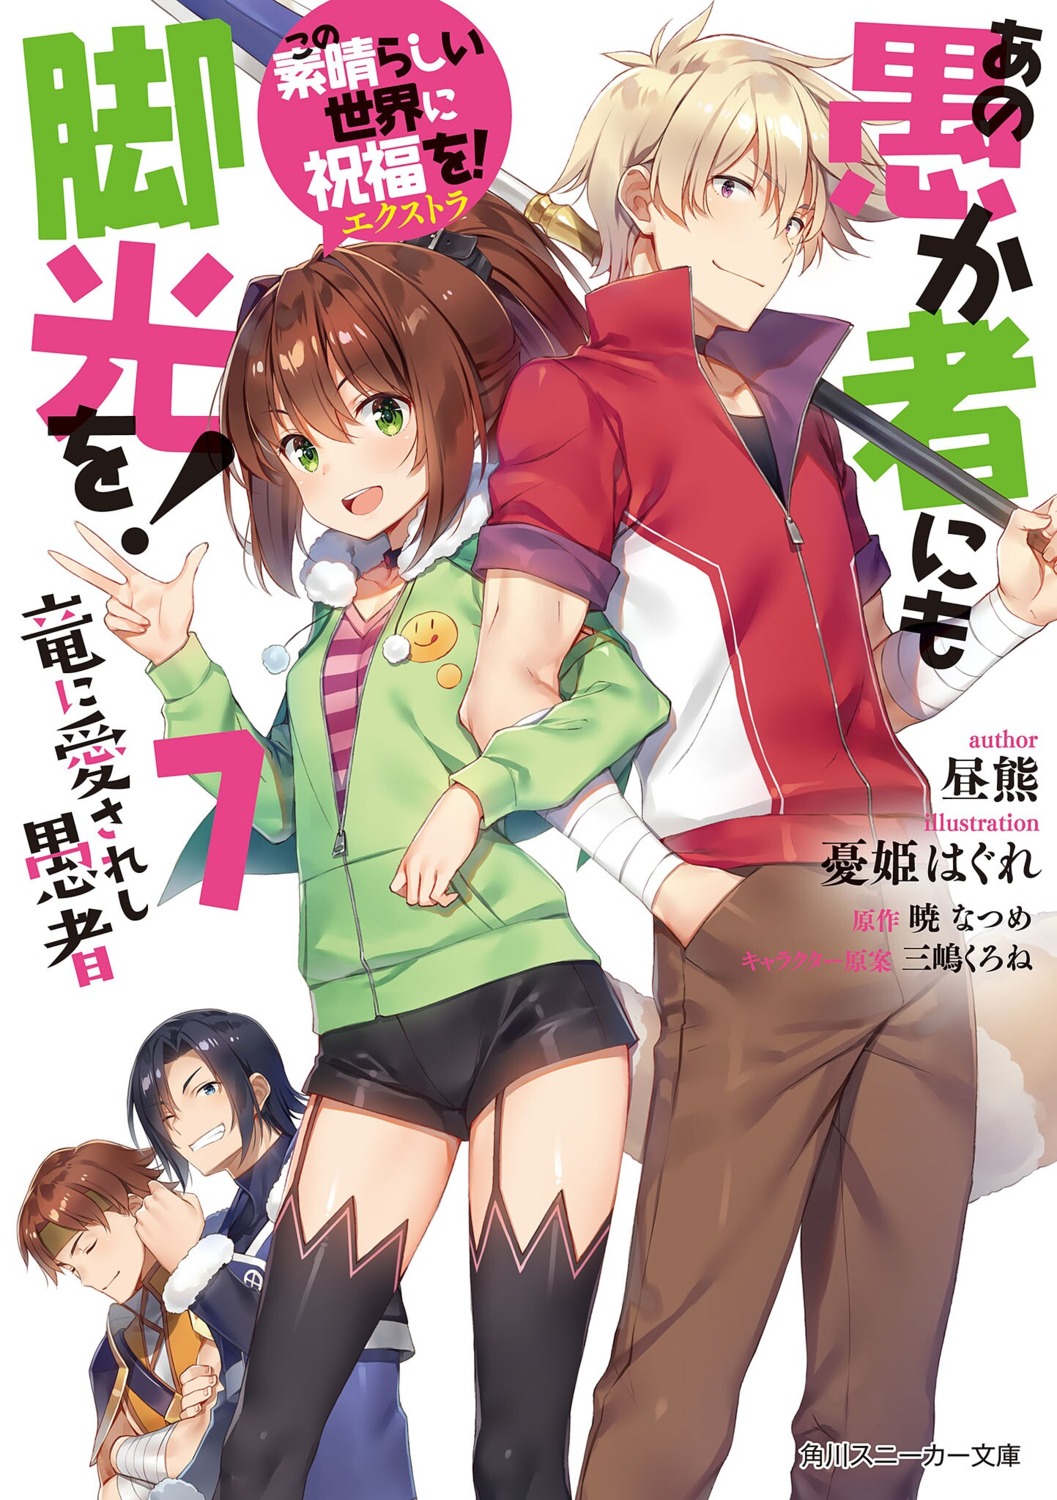 Konosuba Light Novel Volume 12, Kono Subarashii Sekai ni Shukufuku wo!  Wiki